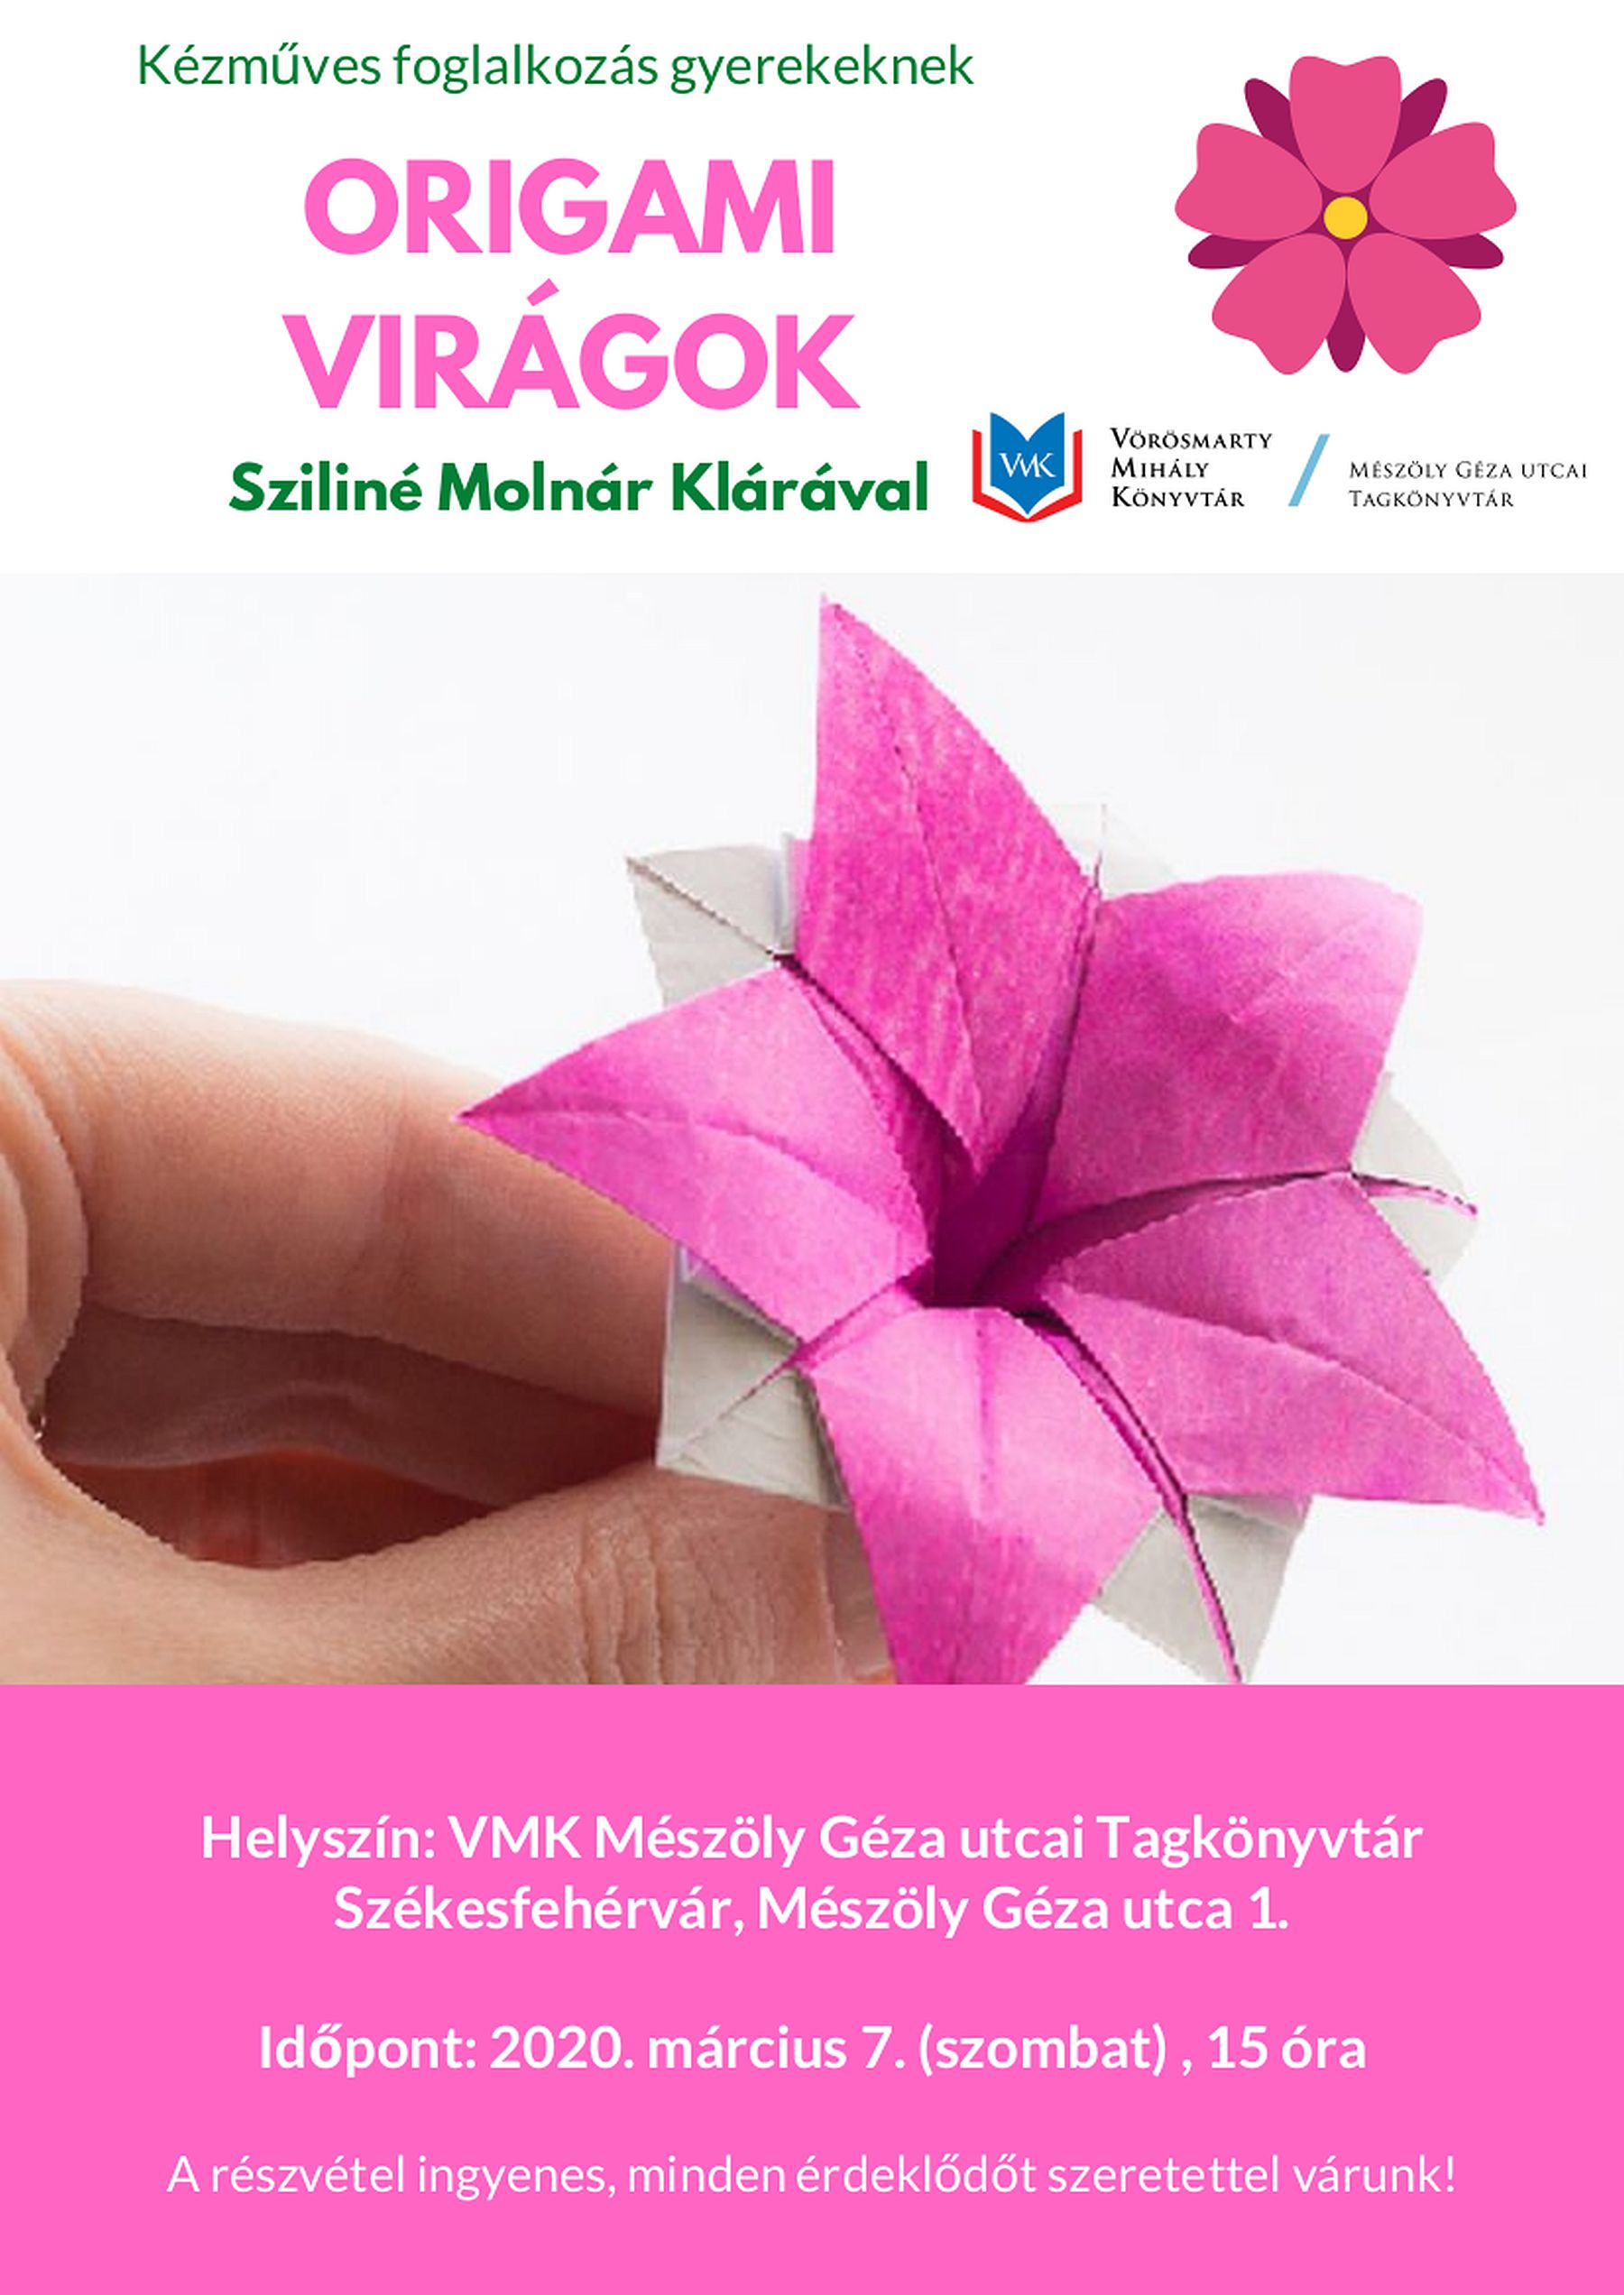 Origami virágok - kézműves foglalkozás lesz a Mészöly Géza utcai Tagkönyvtárban